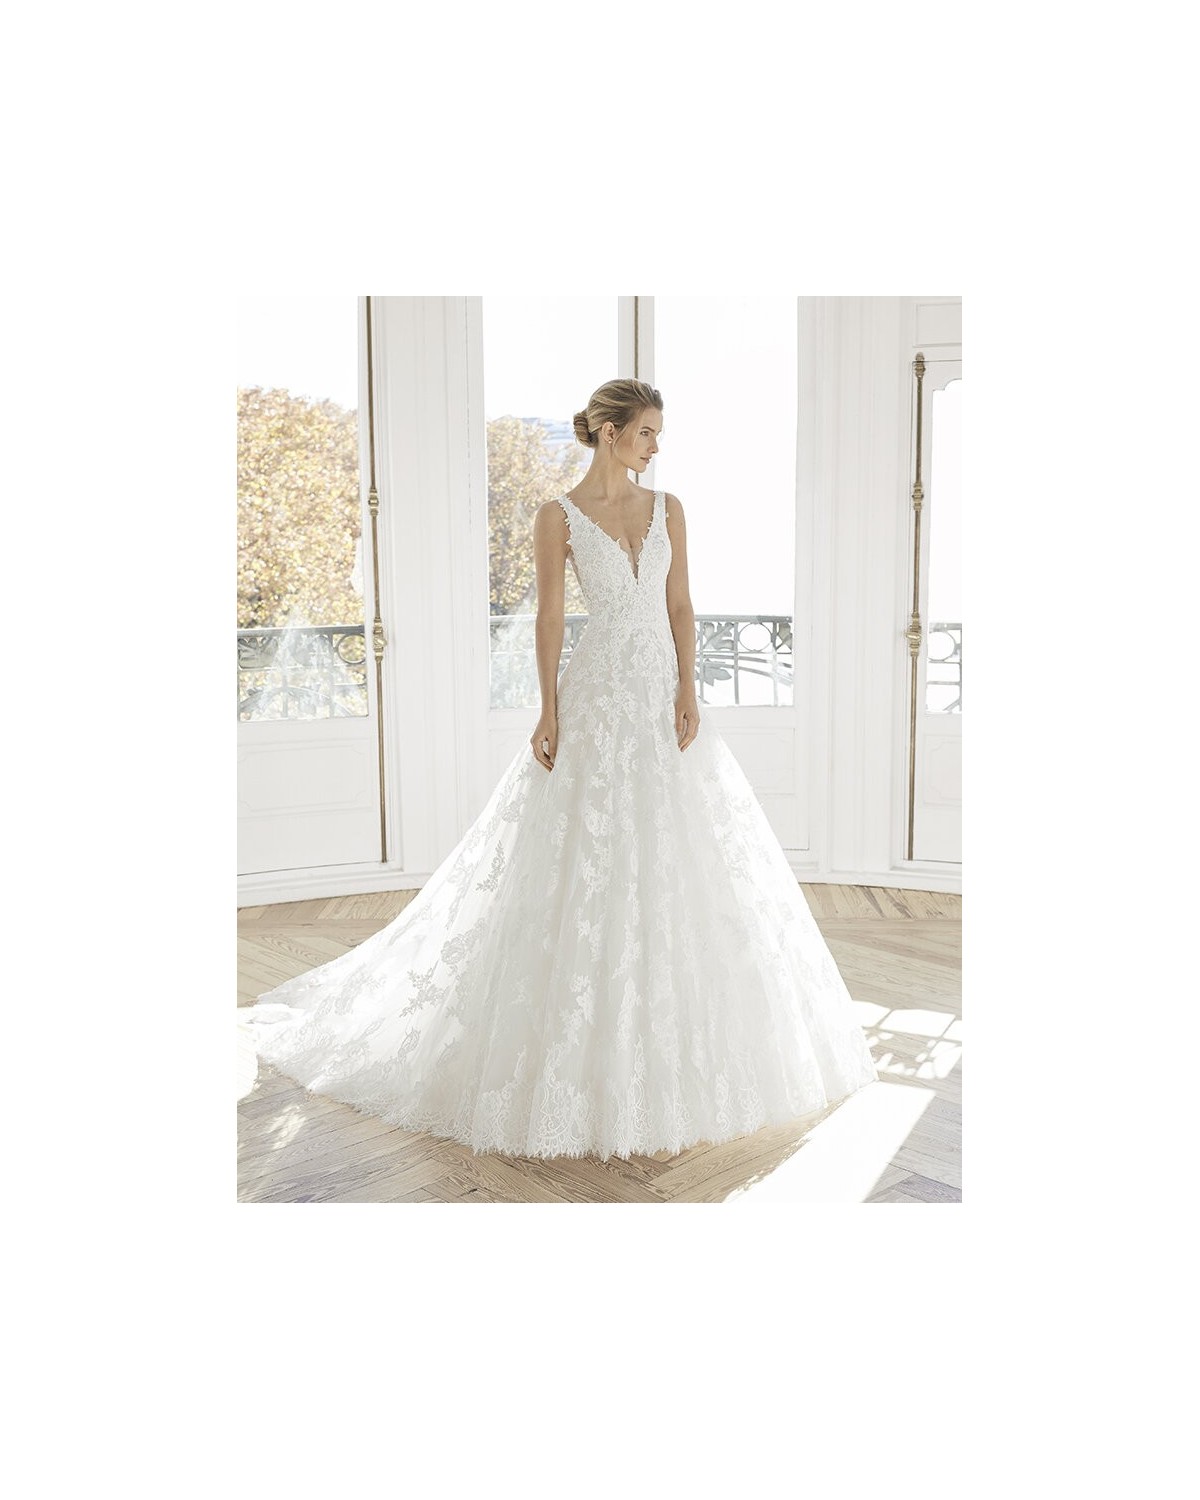 ESPIRAL - abito da sposa collezione 2020 - AIRE BARCELONA